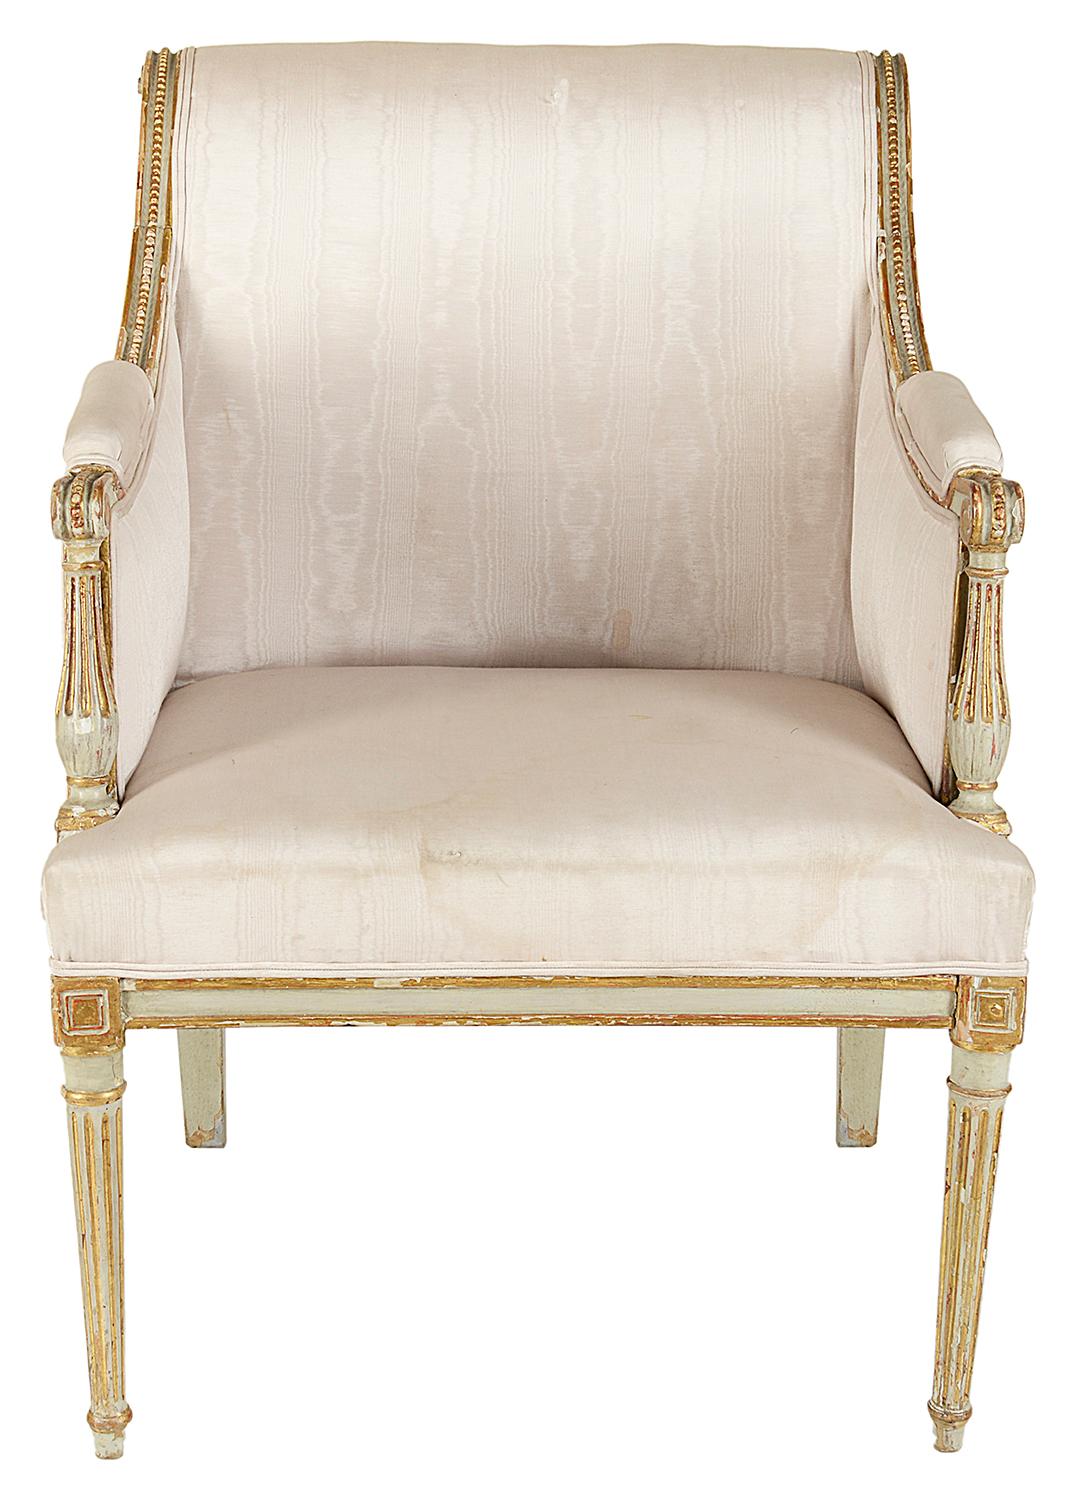 Fauteuil bergère de style Louis XVI de couleur ivoire, très élégant, datant de la fin du 18ème et du début du 19ème siècle. Les pieds sont cannelés et cannelés, décorés à l'or fin et reposent sur des pieds tournés et effilés.